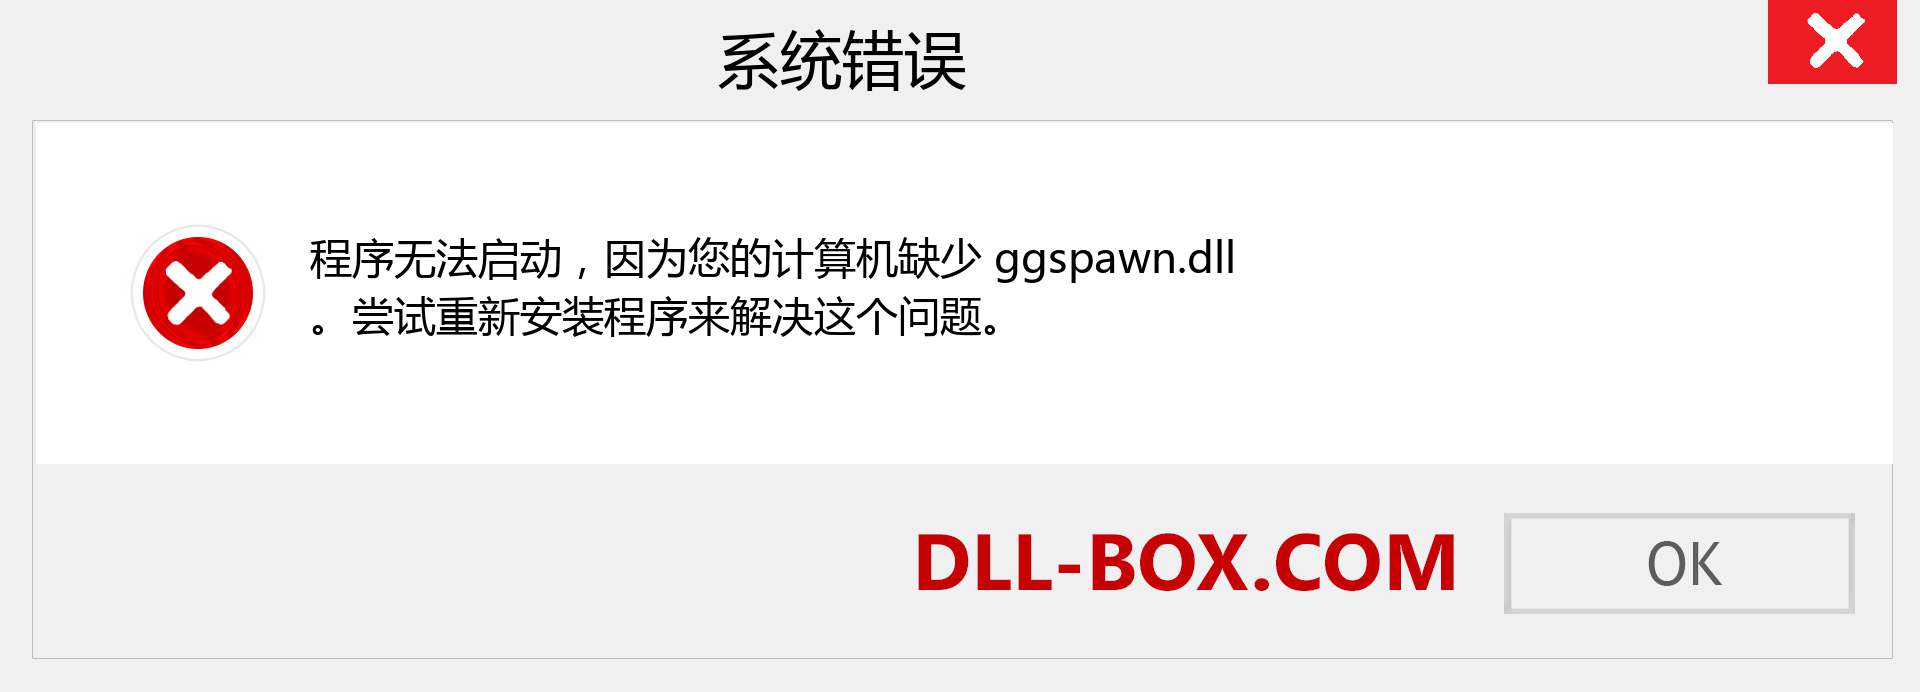 ggspawn.dll 文件丢失？。 适用于 Windows 7、8、10 的下载 - 修复 Windows、照片、图像上的 ggspawn dll 丢失错误